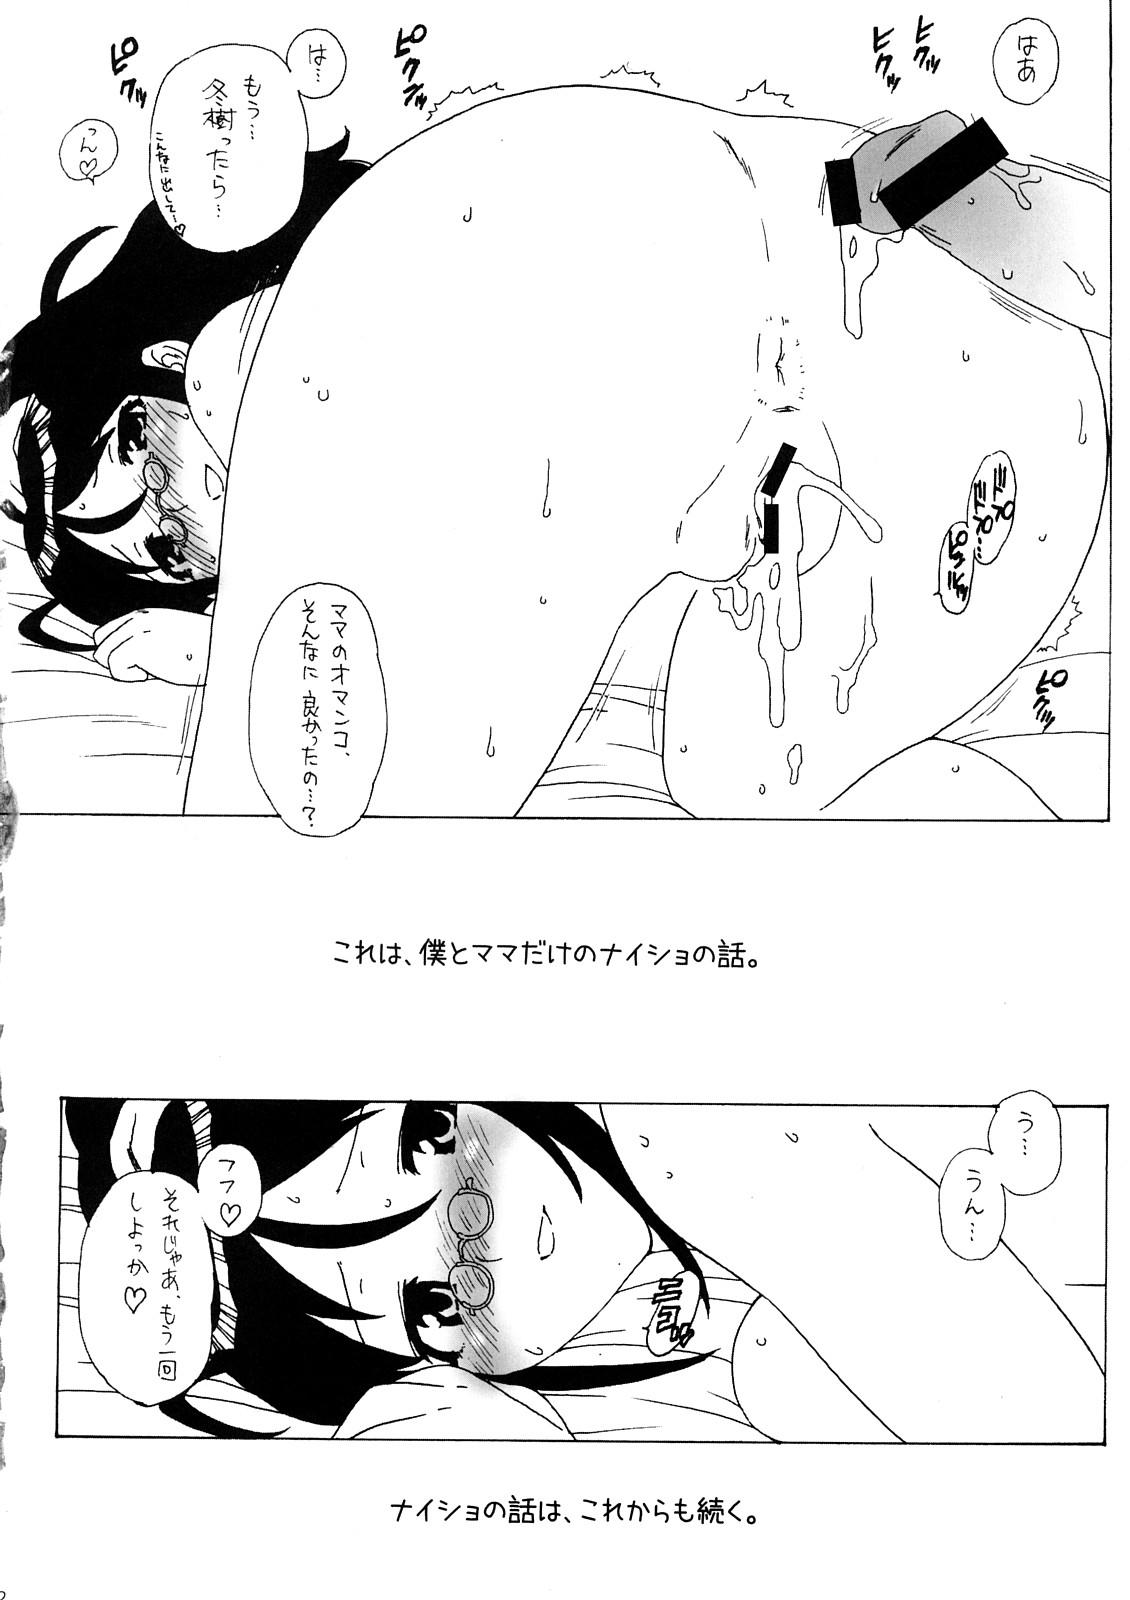 18 Year Old Boku to Mama no Naisho - Keroro gunsou Strange - Page 11